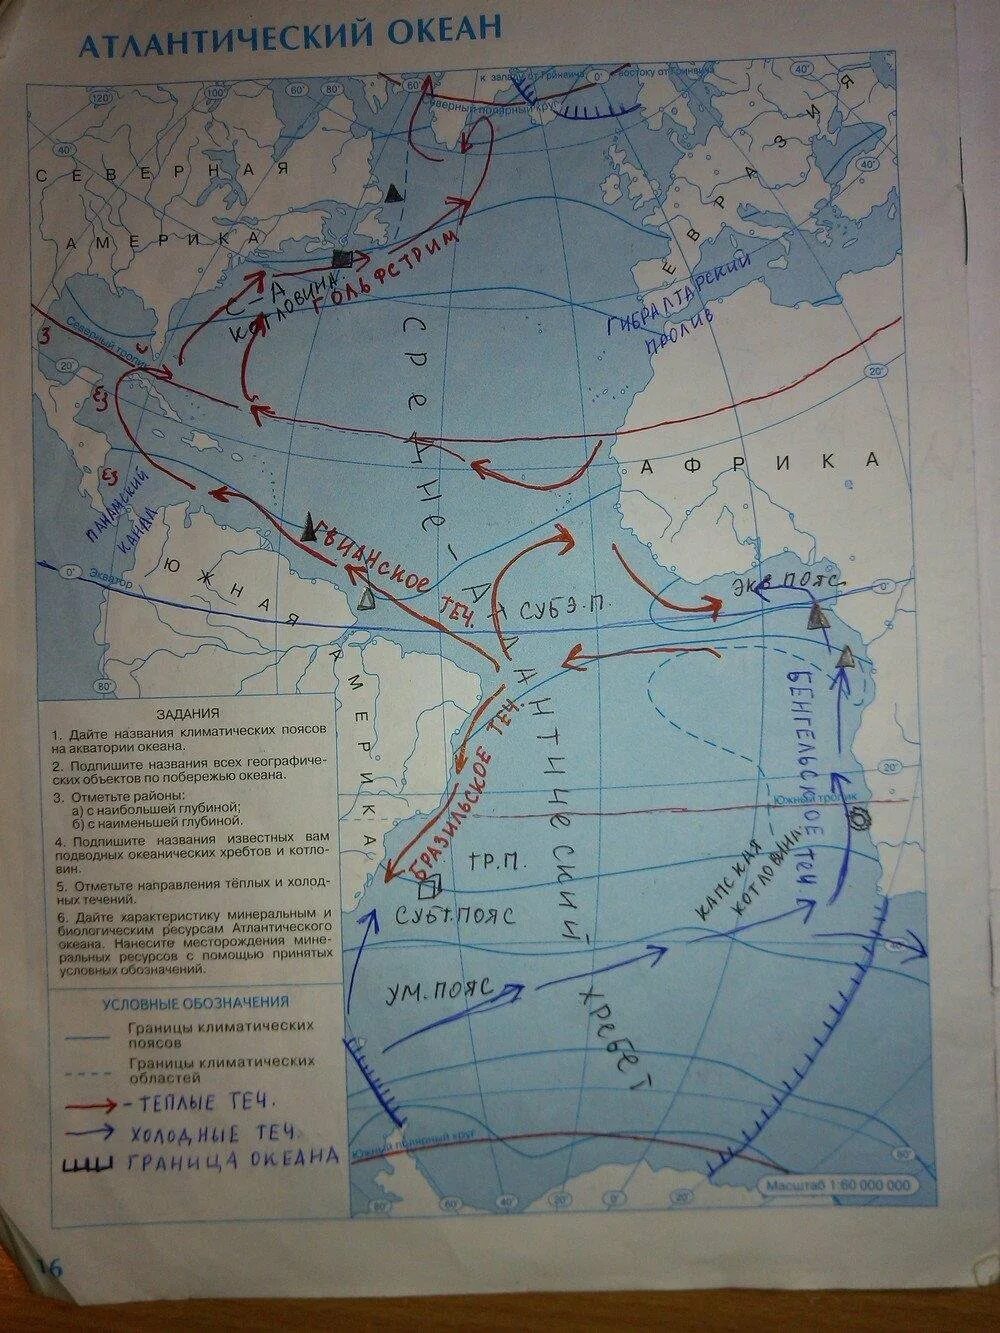 Атлантический океан 7 класс география контурная карта. Атлантический океан контурная карта 7 класс гдз. Гдз по географии 7 класс контурные карты стр 16 Атлантический океан. География 7 класс контурная карта страница 16 Атлантический океан гдз.